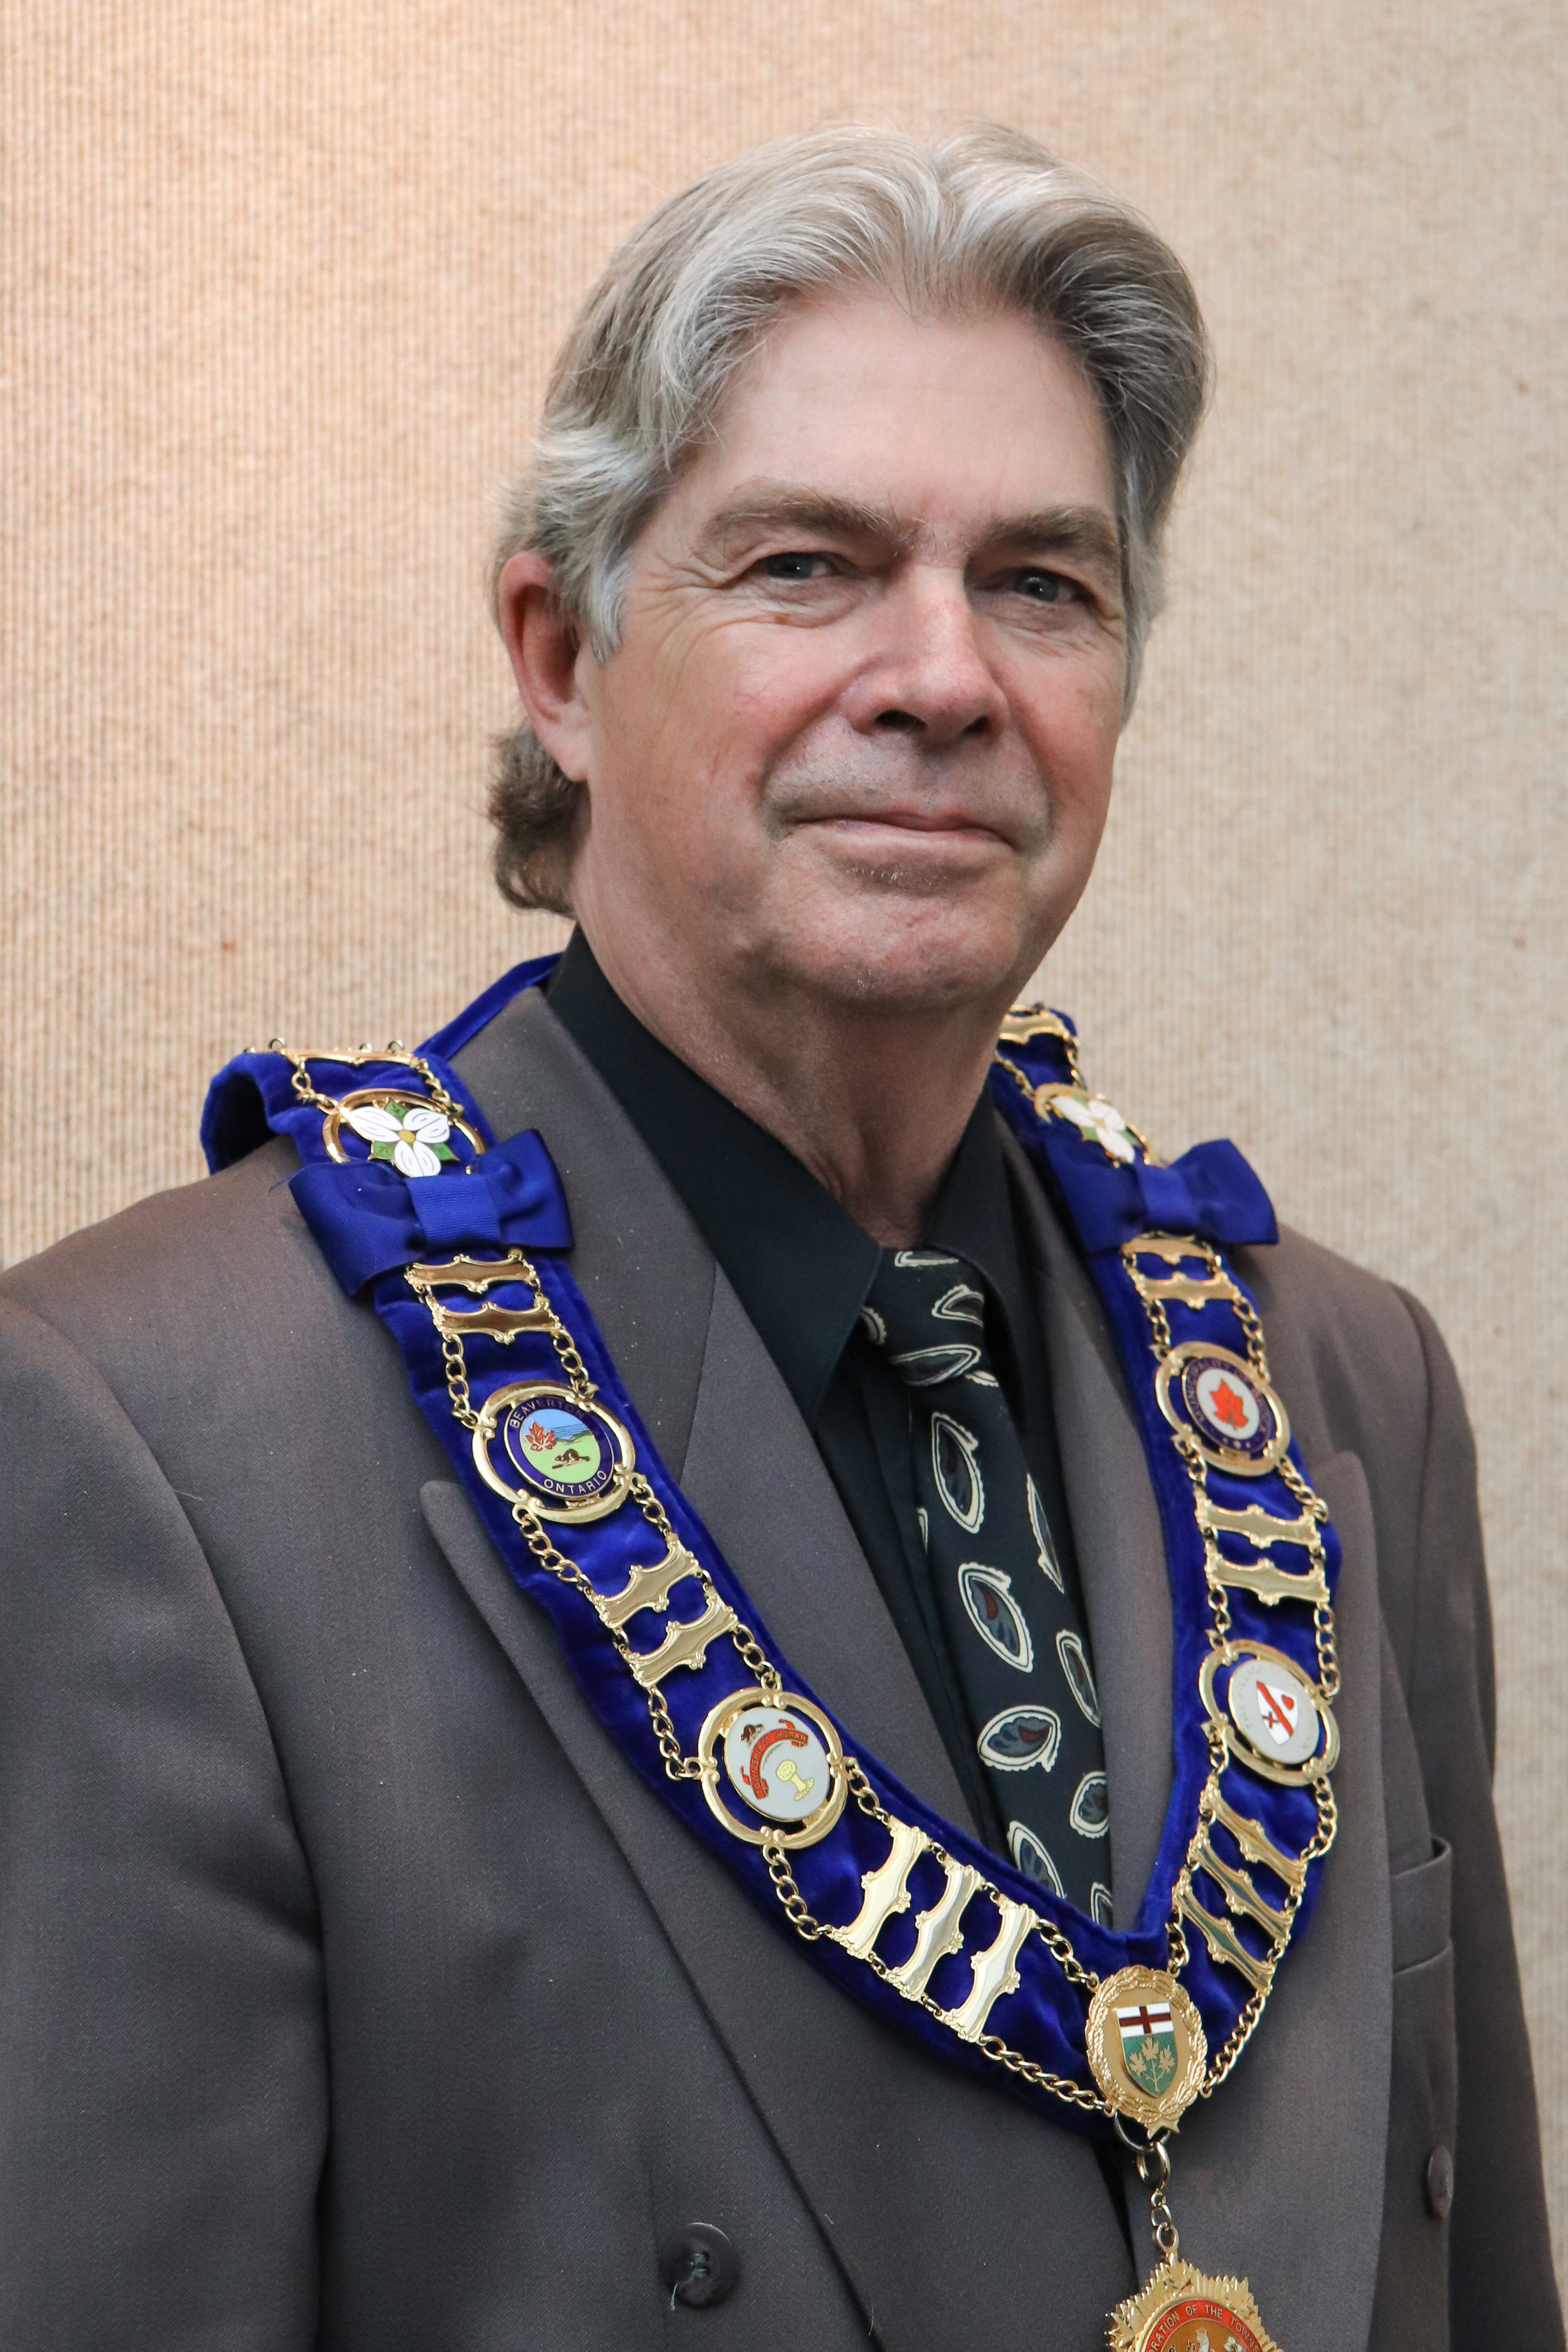 Mayor John Grant